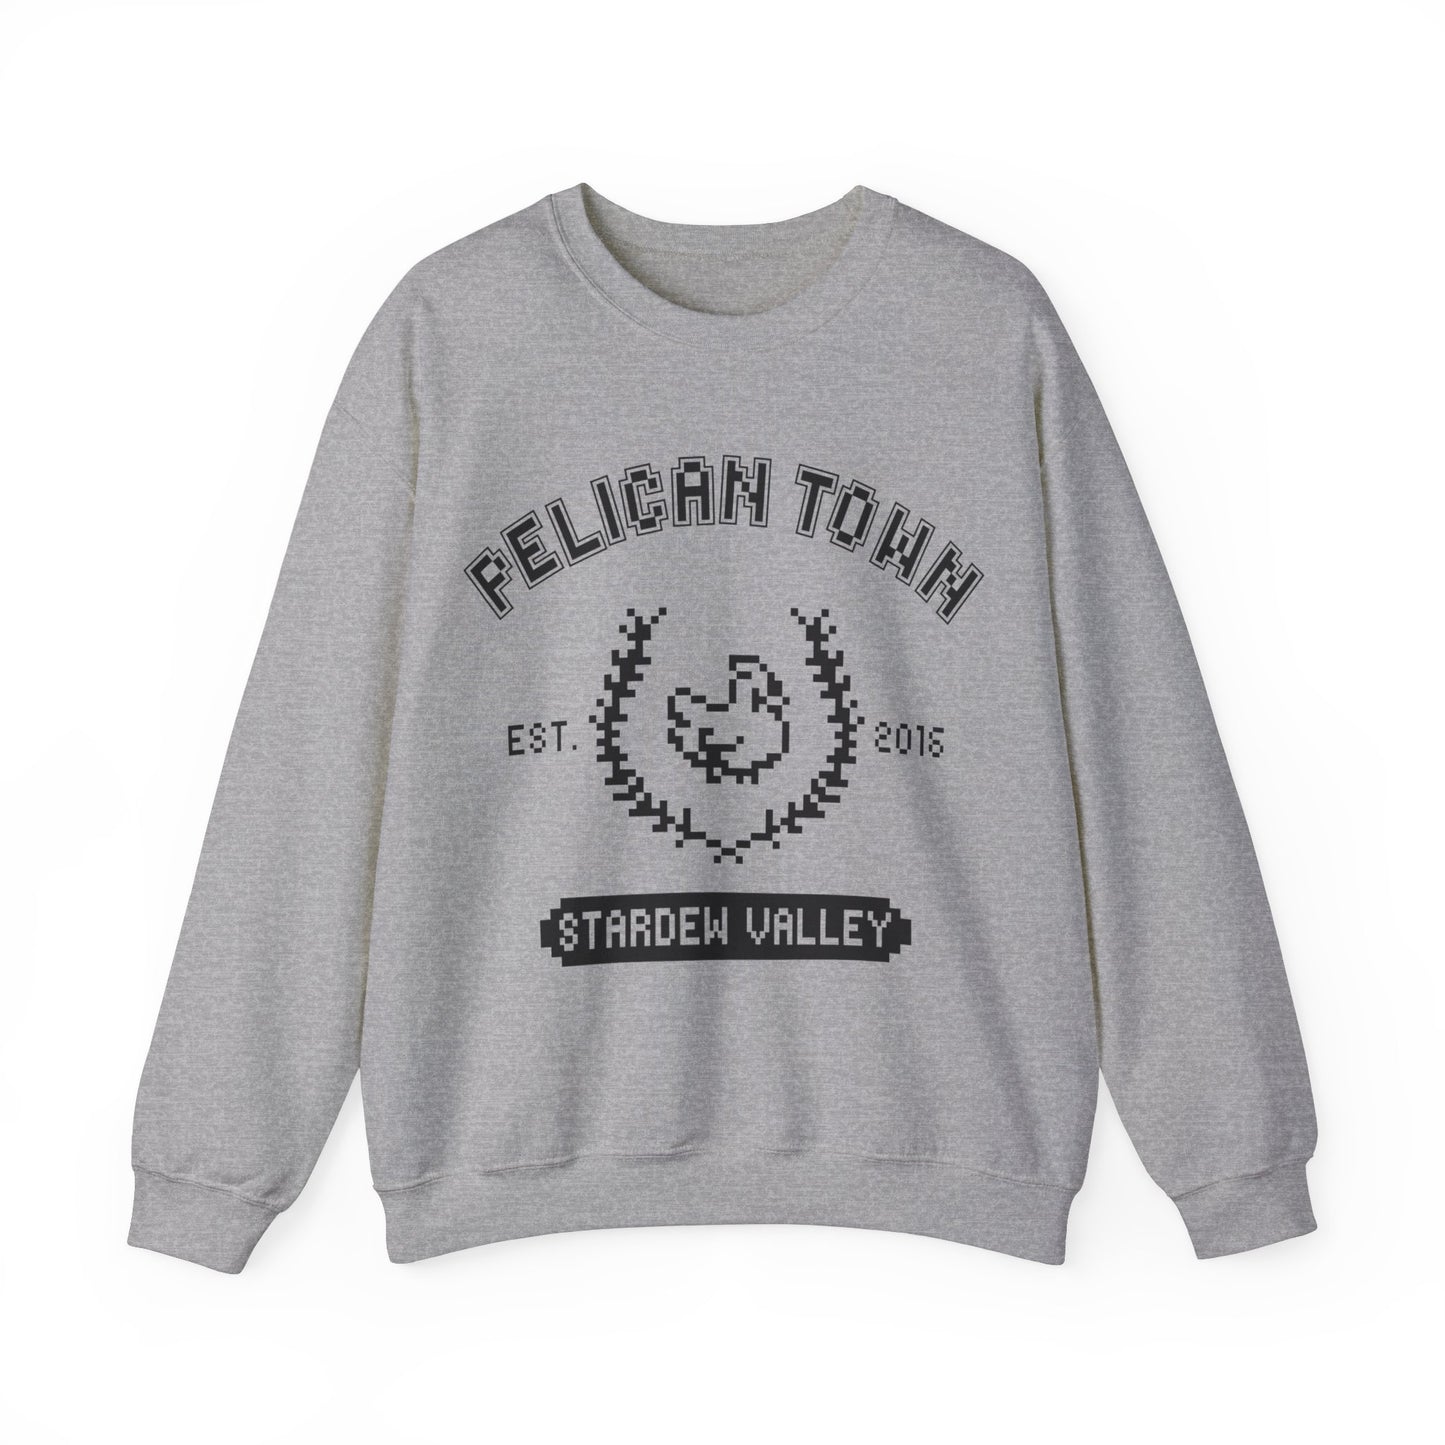 Pelican Town Pixel Crewneck Sweatshirt